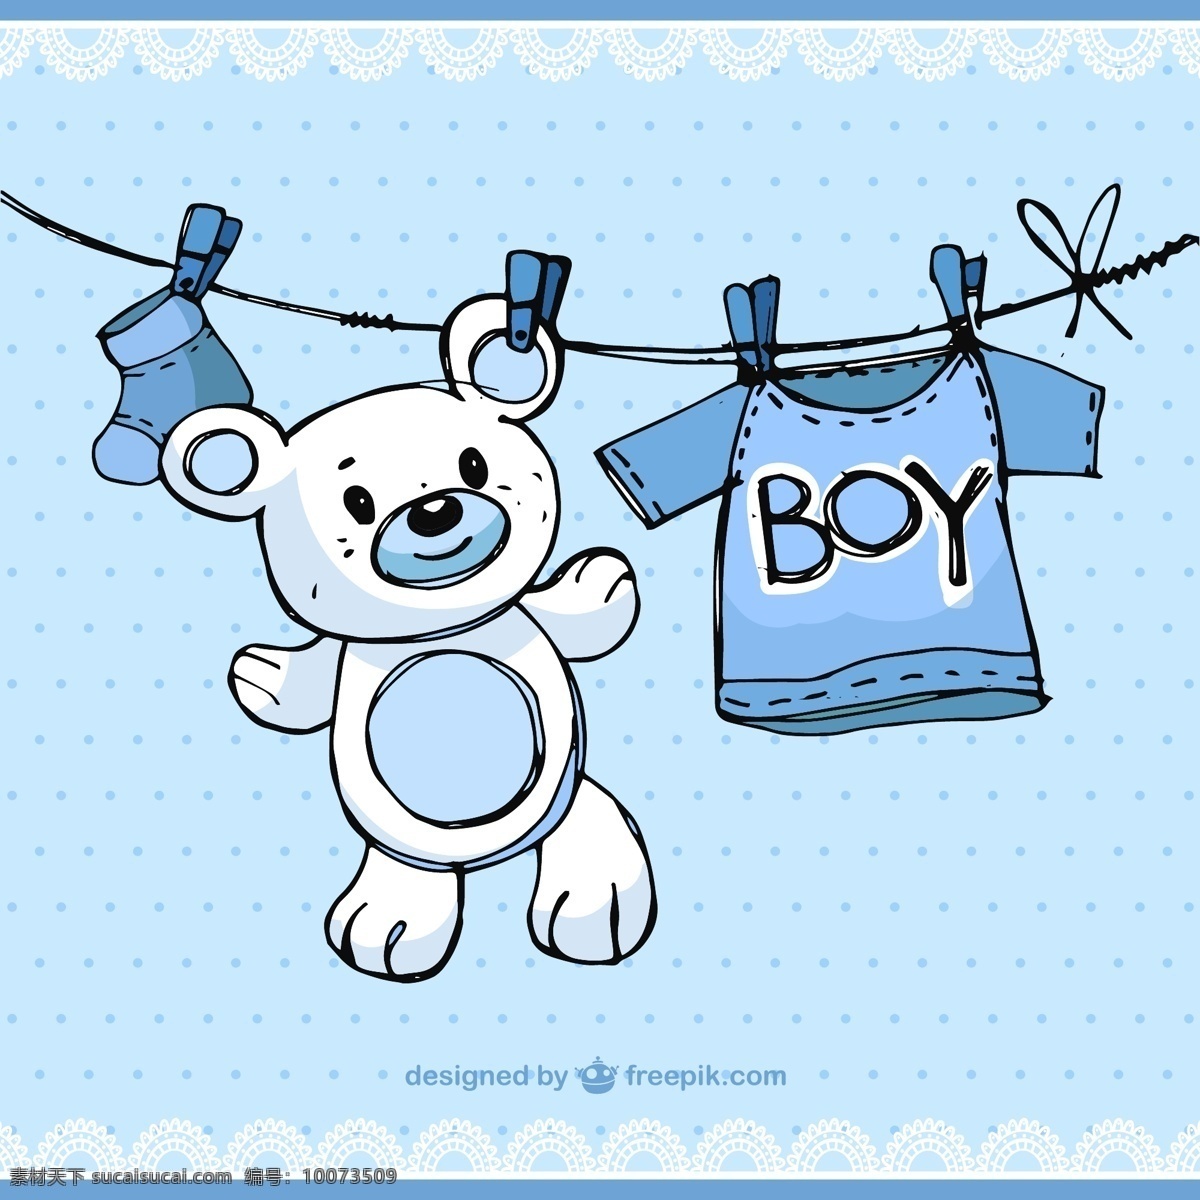 蓝色 晾 衣 绳 玩具 熊 矢量图 蕾丝 母婴 母婴素材 晾衣绳 玩具熊 夹子 晾衣夹 婴儿服装 衣服 婴儿袜 花边 点状 手绘 插画 生活百科 生活用品